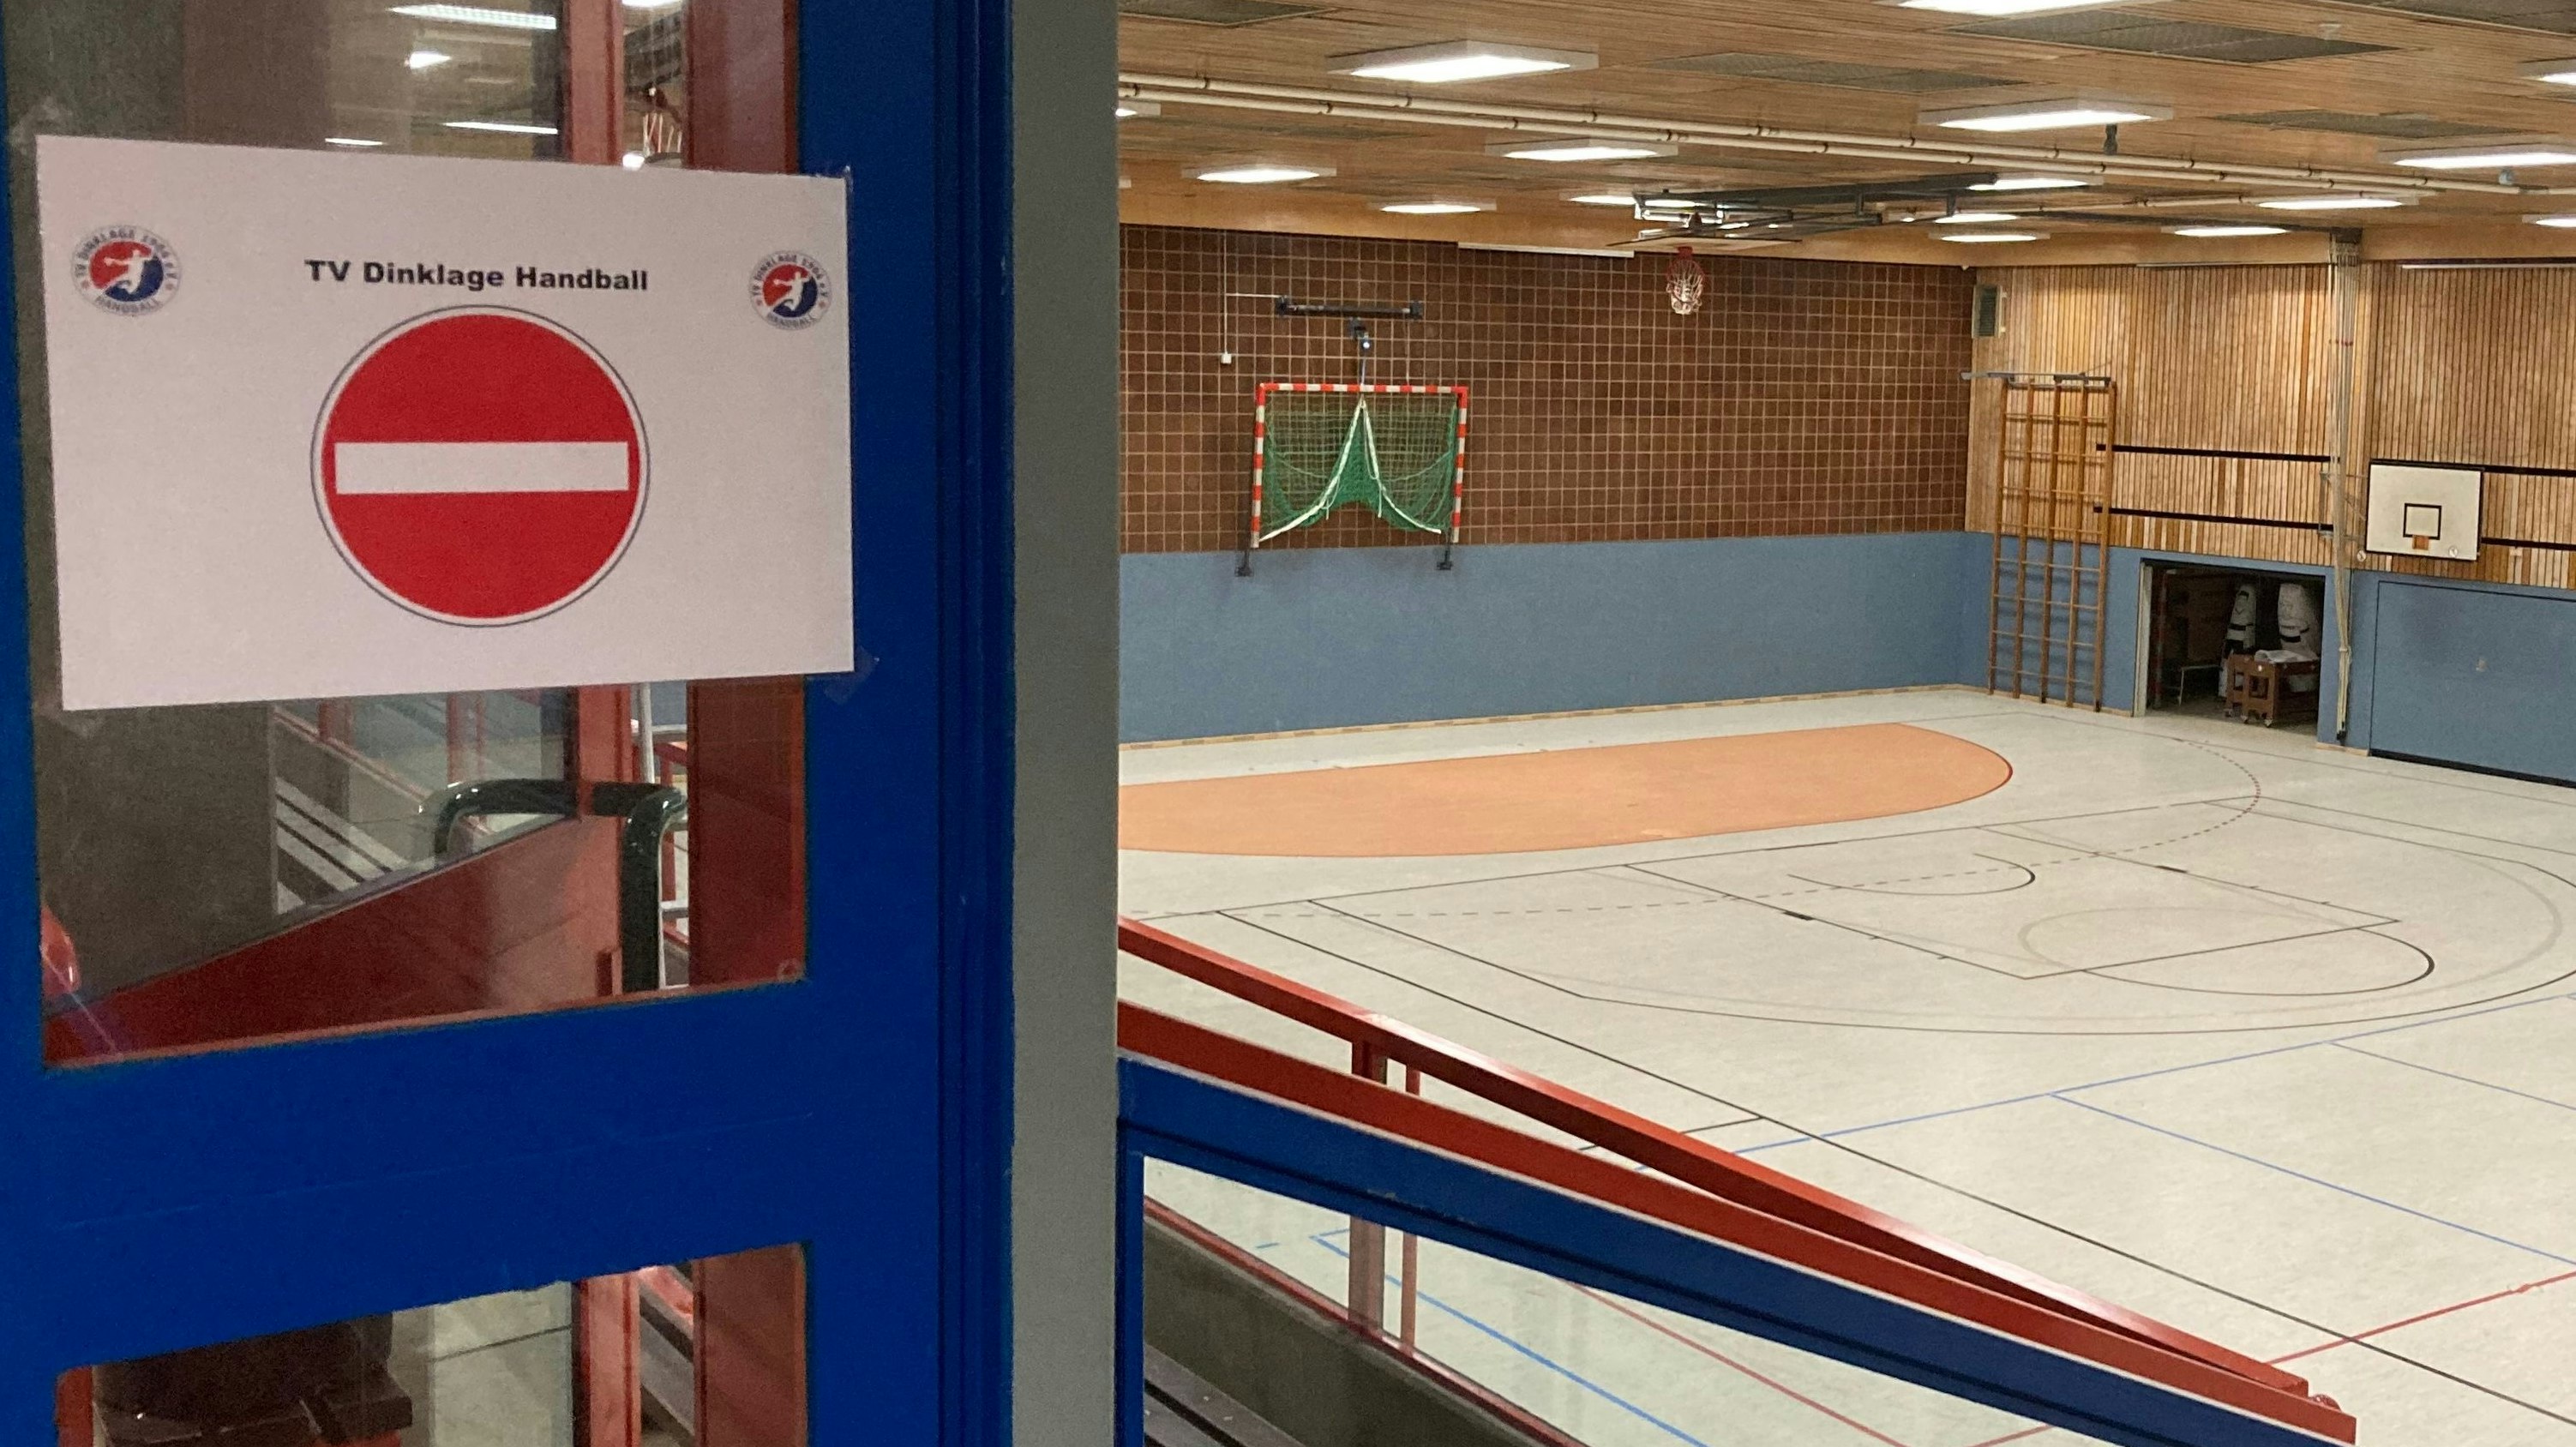 Aufenthalt verboten: Auch Einzelsportler dürfen nicht in die großen Dinklager Hallen. Foto: Lünsmann